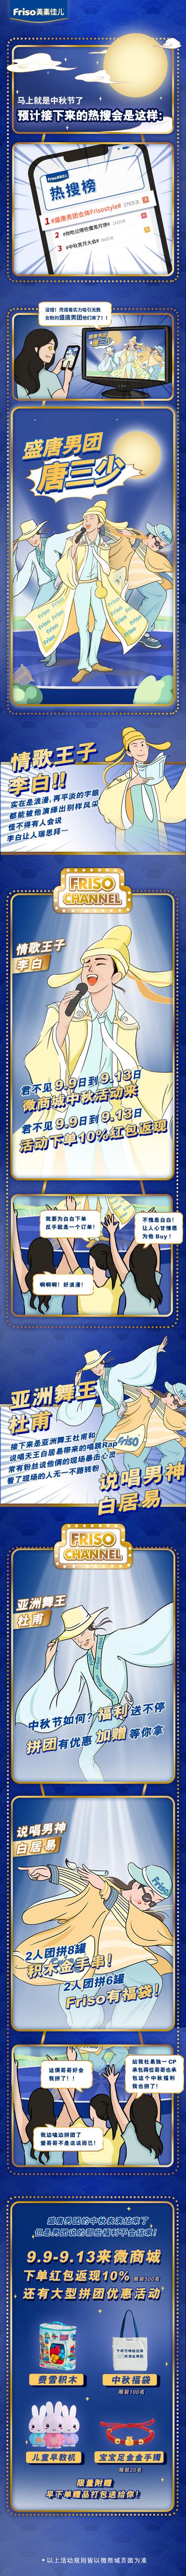 【南门网】专题设计 中秋节 中国传统节日 热搜榜 创意 插画 漫画 手绘 李白